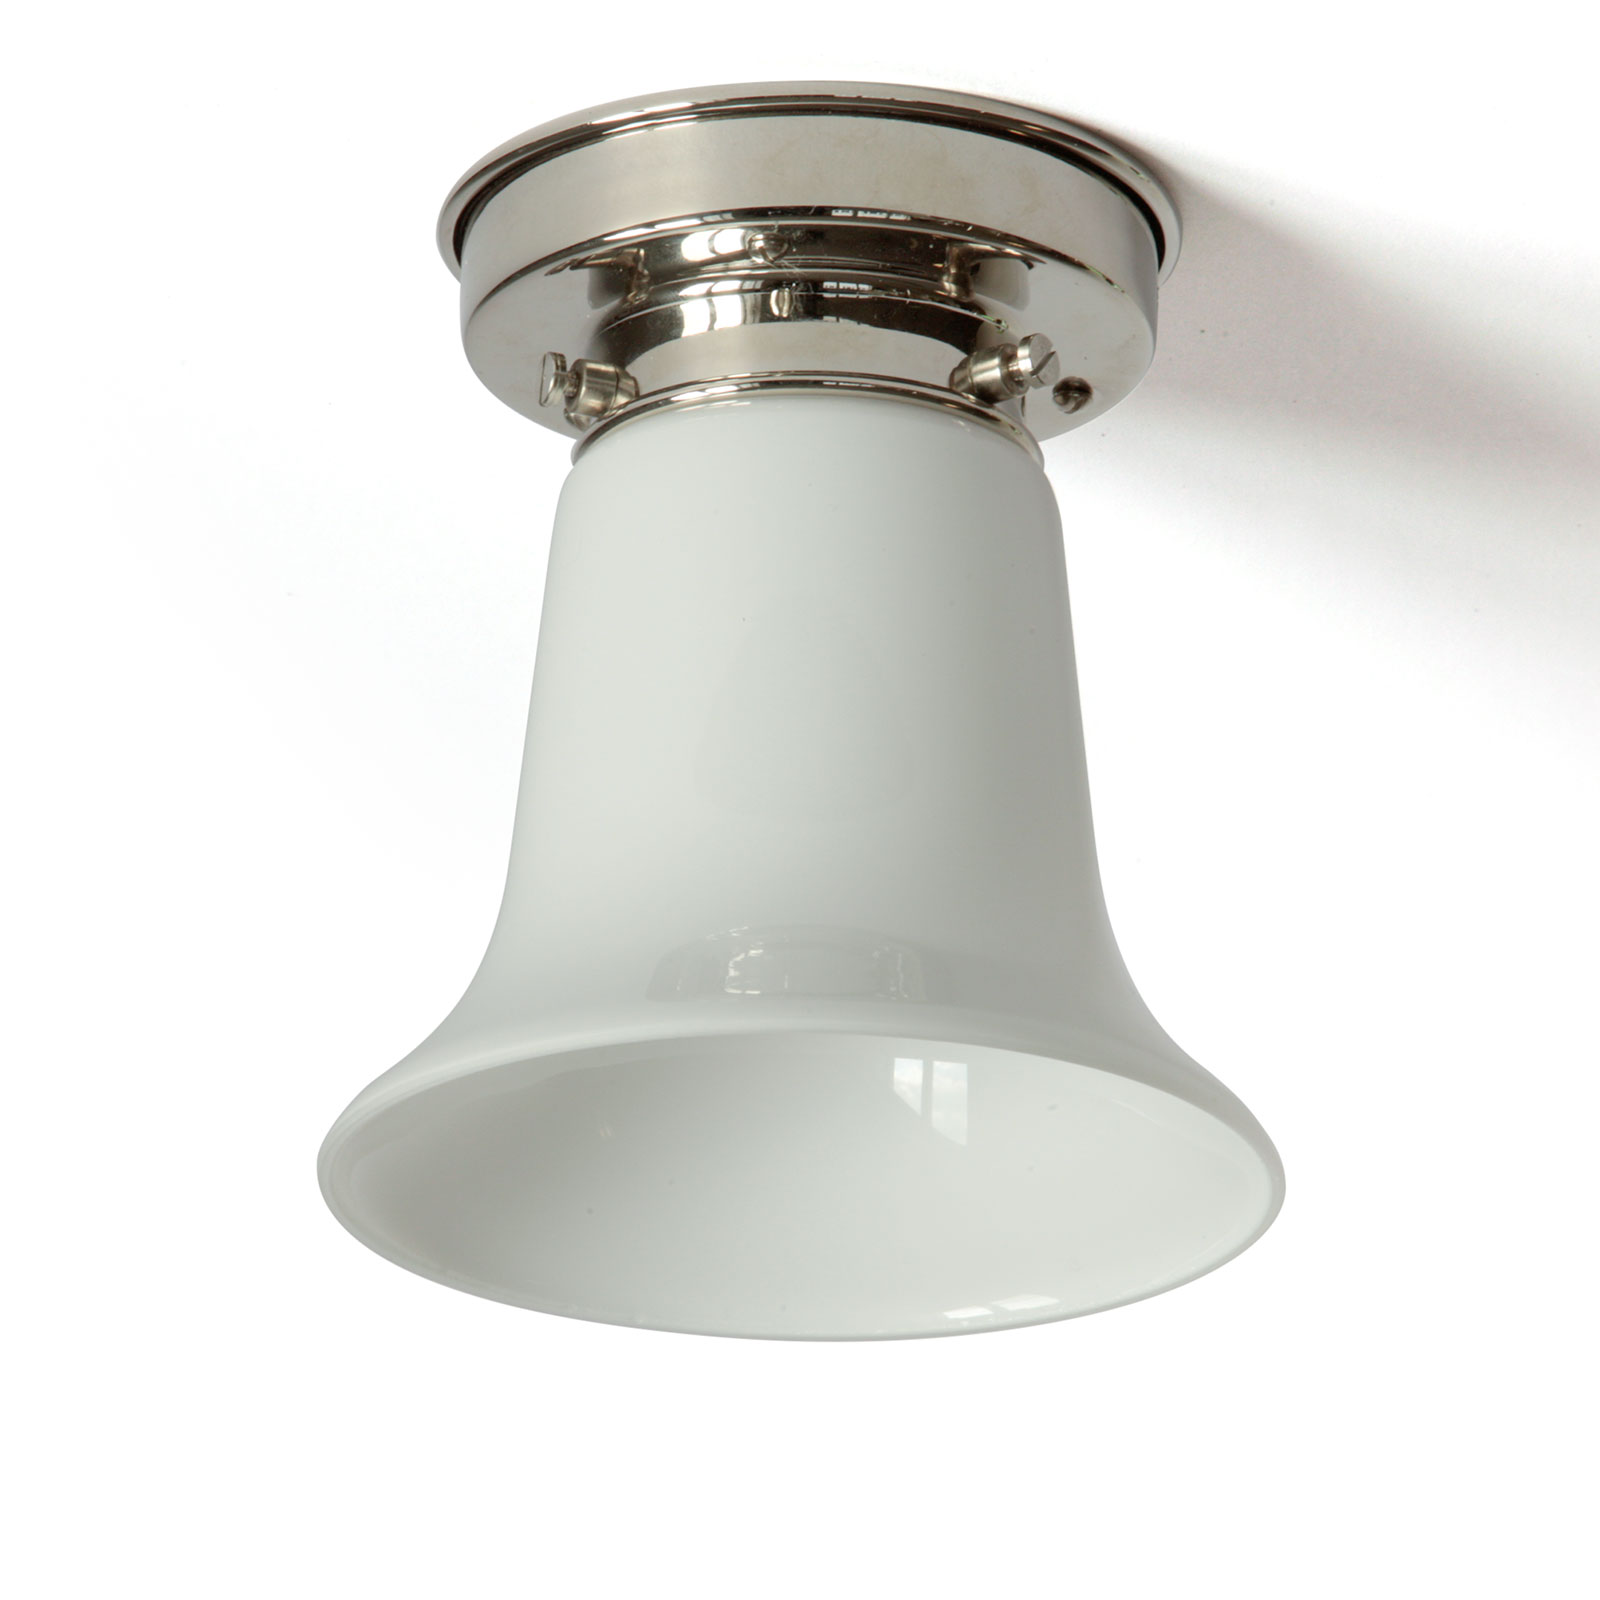 Kleine Deckenlampe mit offenem Opalglas-Kelch Ø 13 cm: Kleine Deckenlampe offenem Opalglas-Kelch, hier Messing glänzend vernickelt